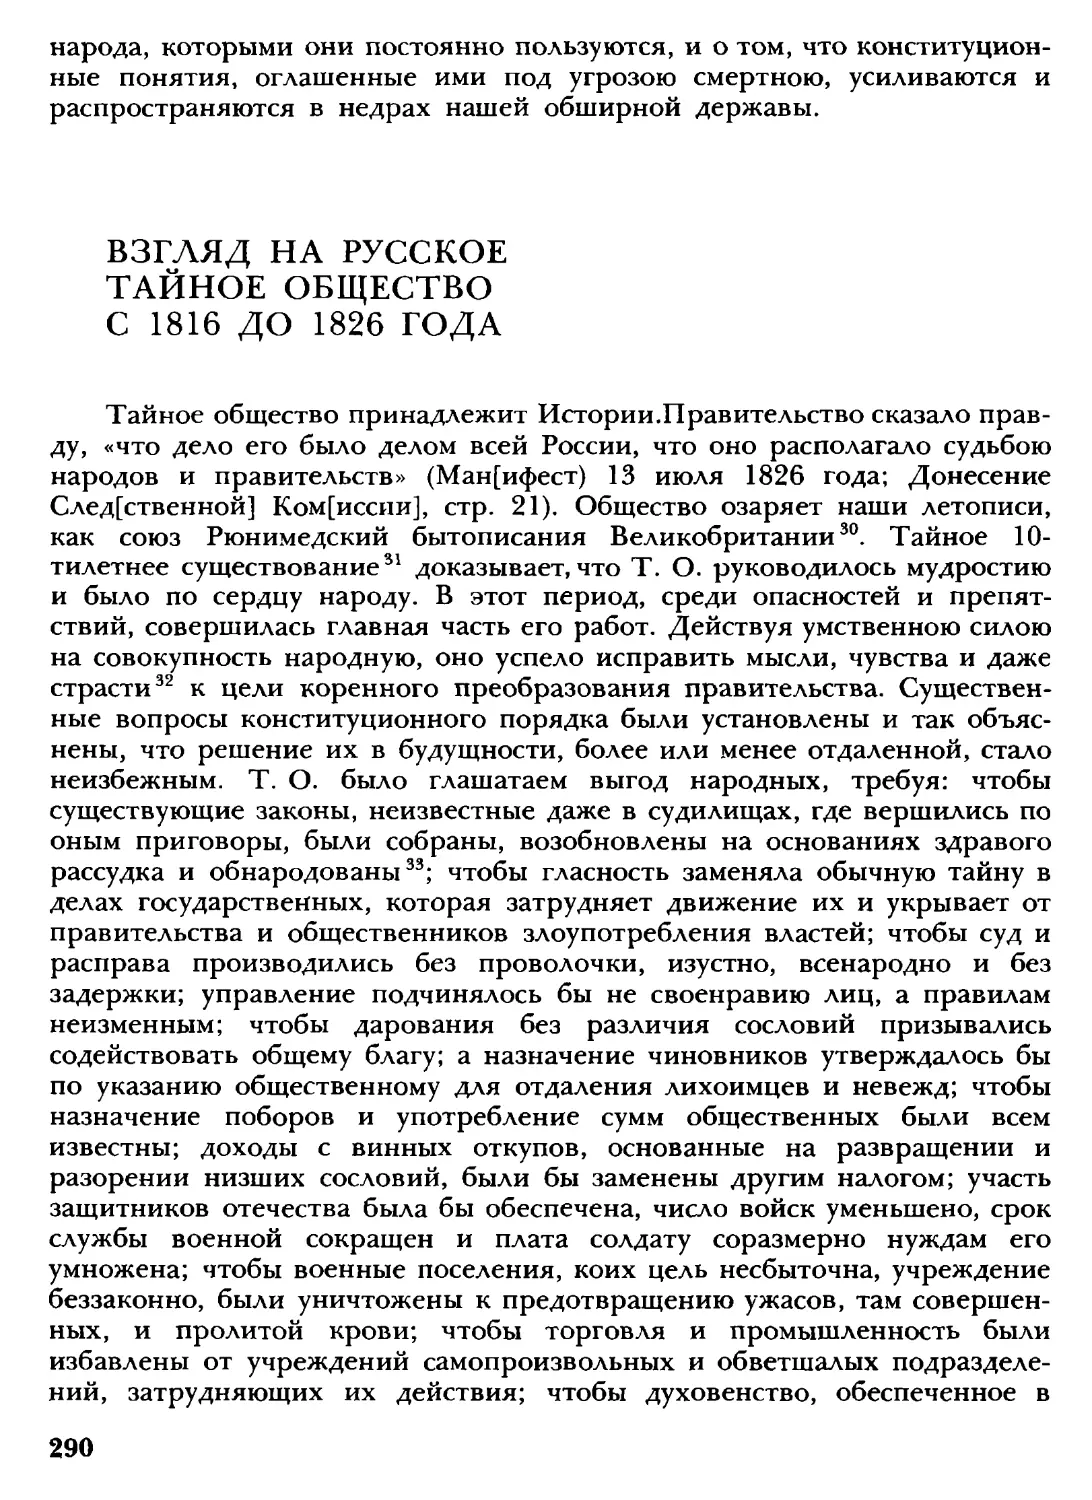 Взгляд на русское тайное общество с 1816 до 1826 года